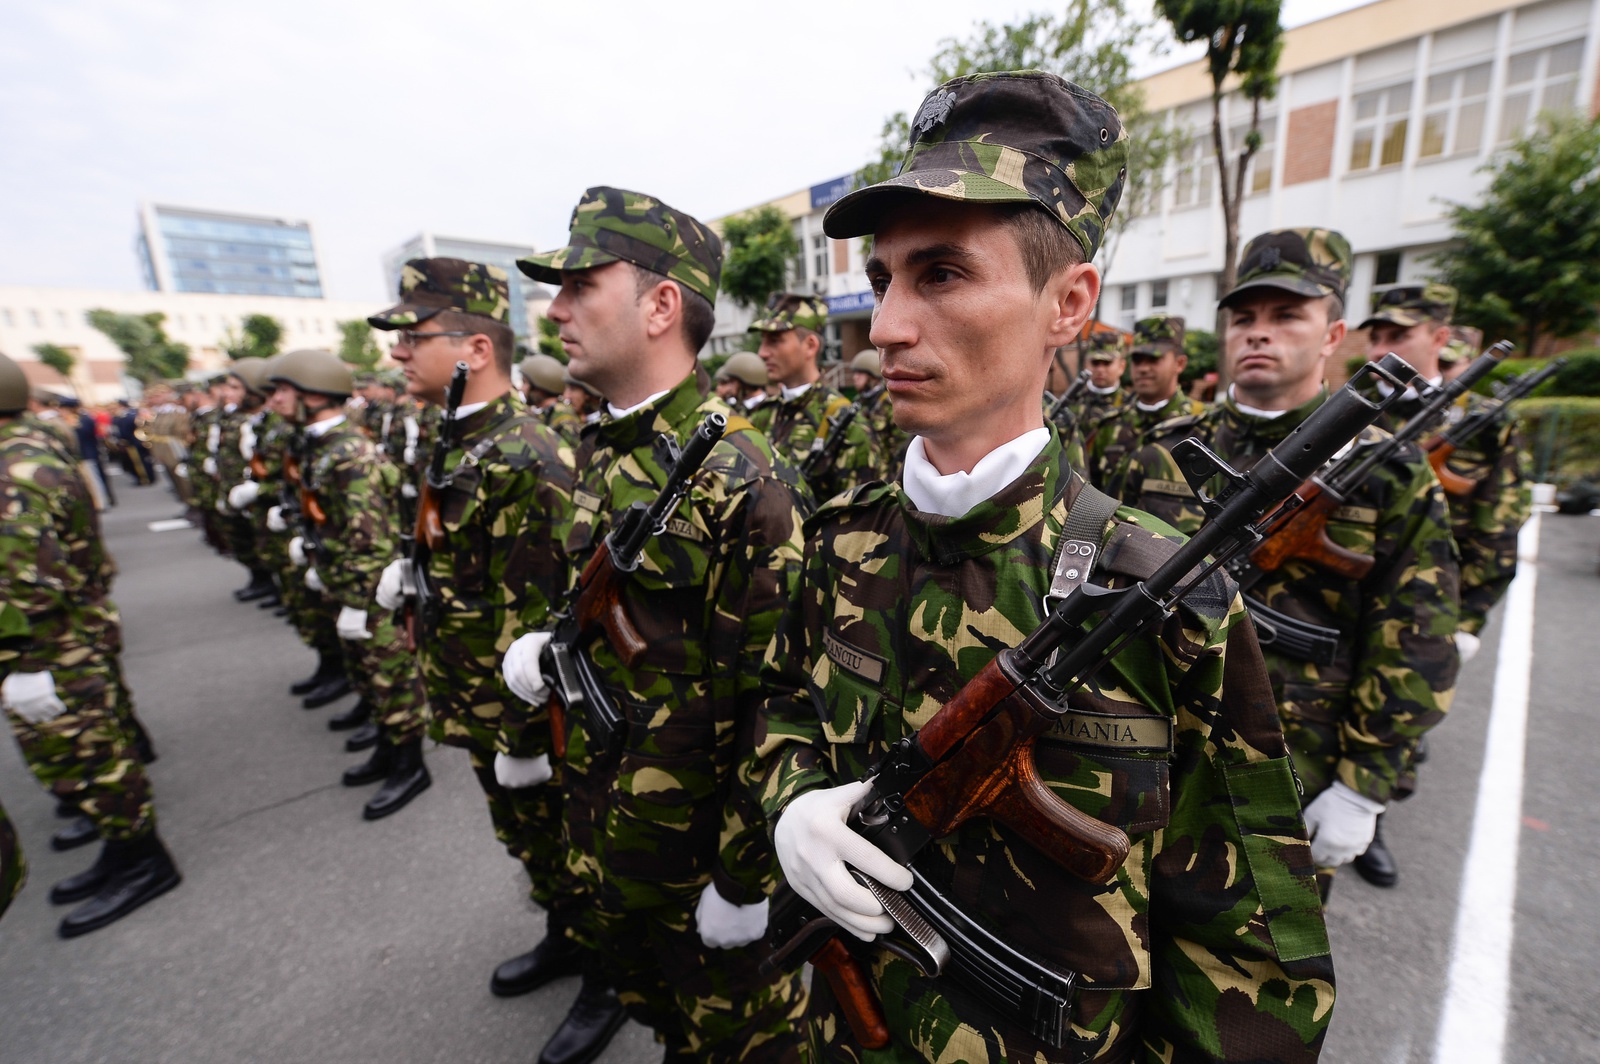 România a avut o creştere cu 50% a cheltuielilor militare în 2016-2017, cea mai mare din lume